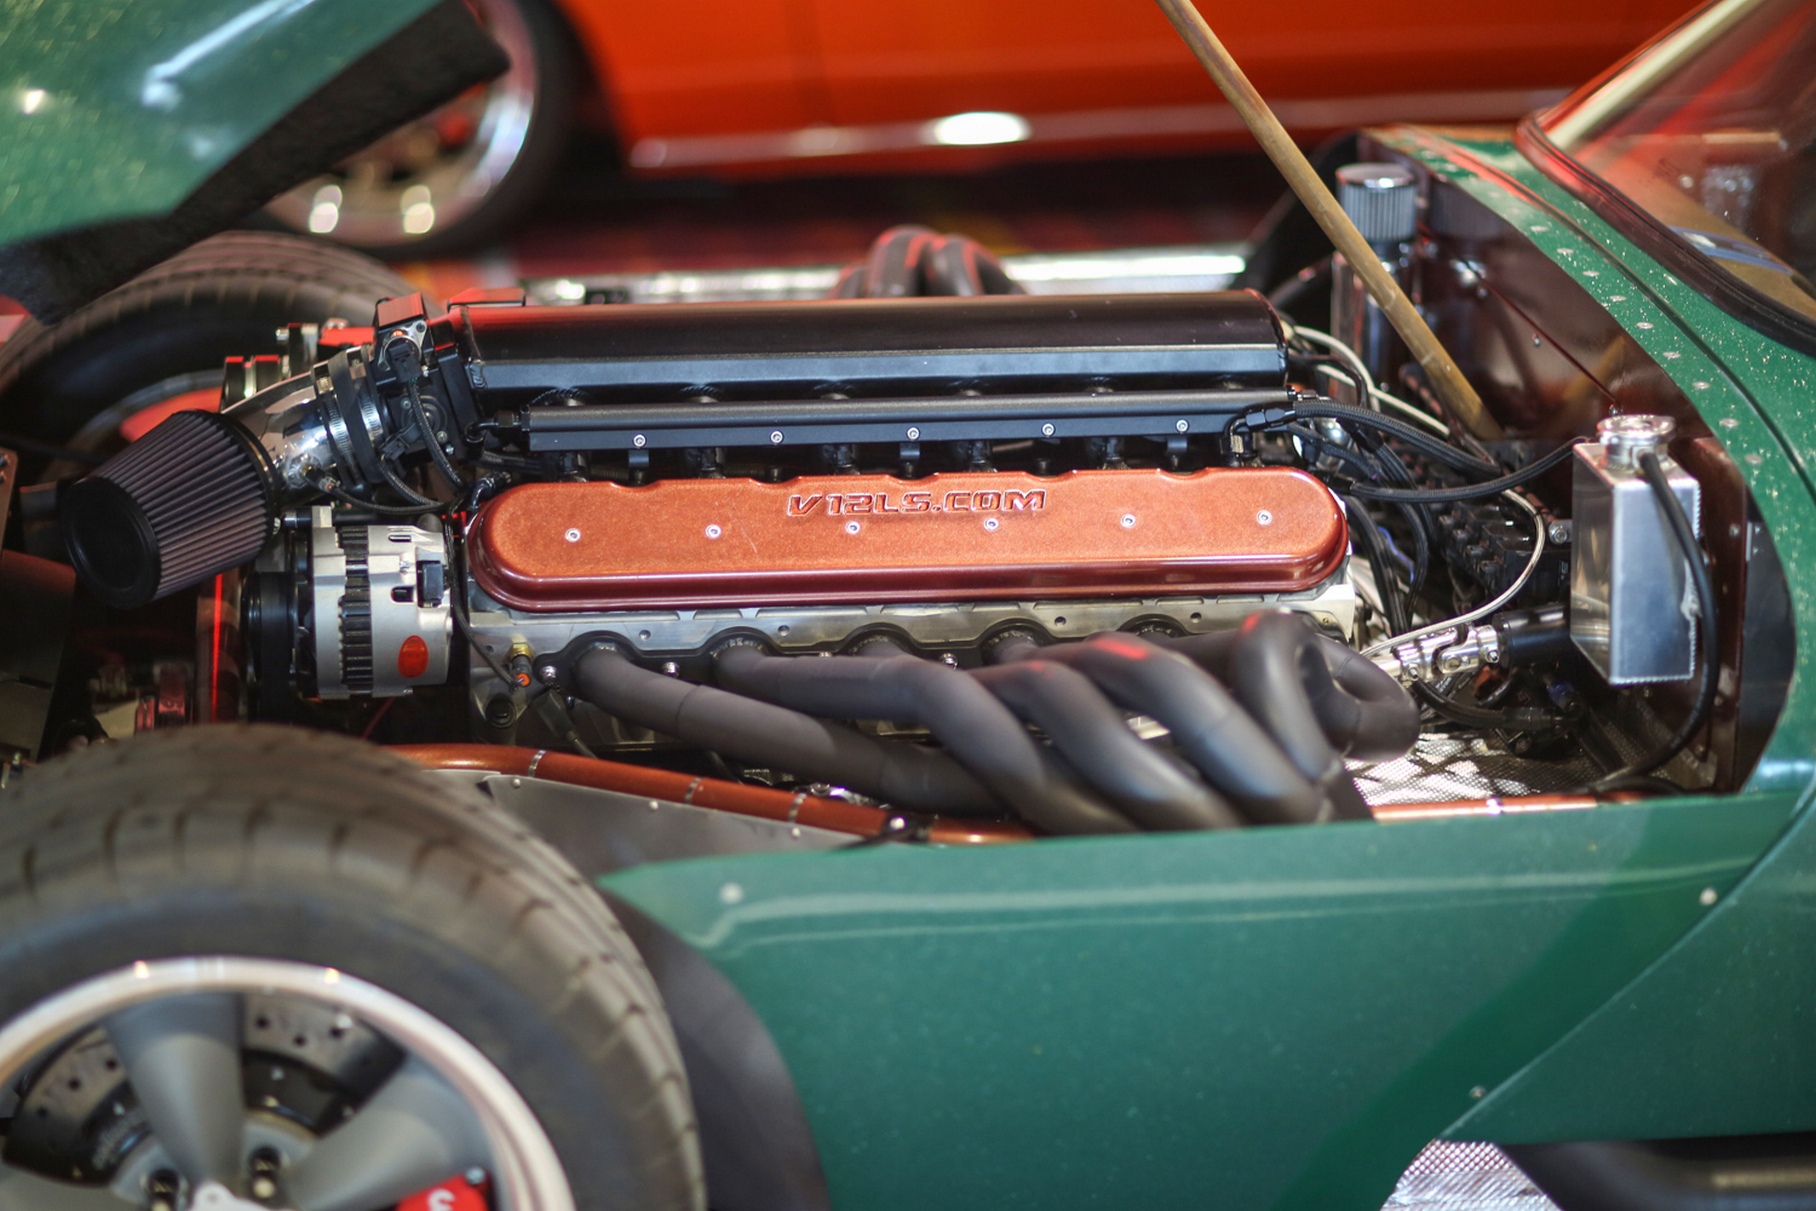 Спорткар Cheetah в шестидесятые годы оснащался моторами V8 от Chevrolet Corvette, здесь же разместился их дальний родственник с 12 цилиндрами